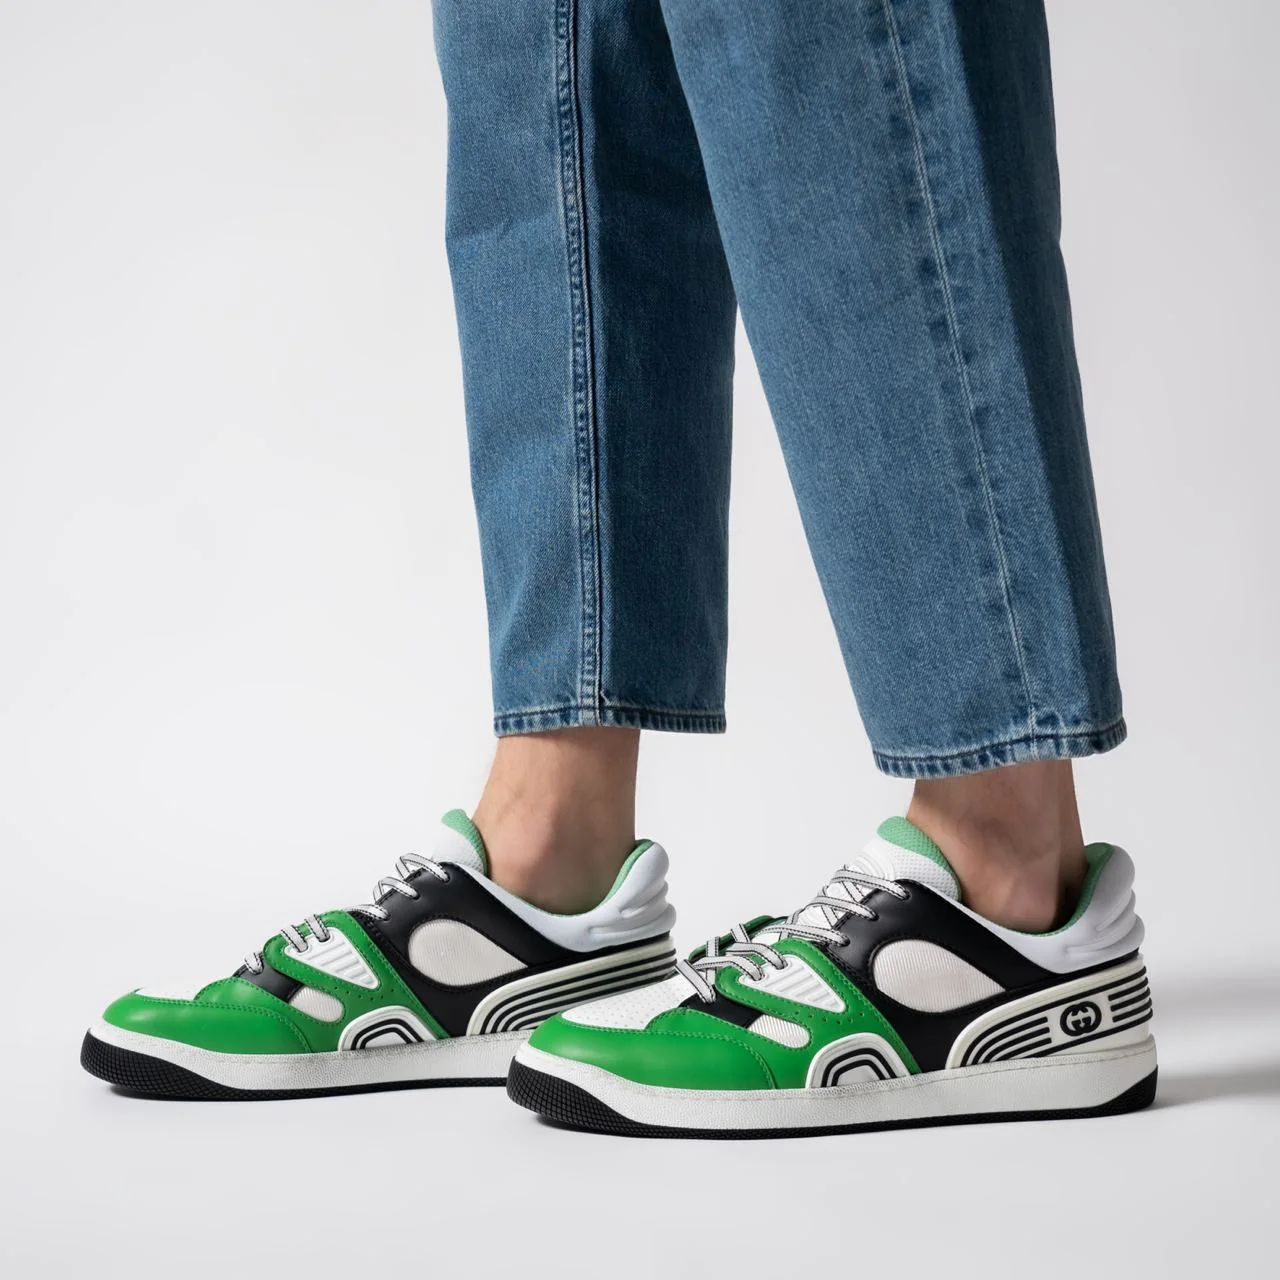 Gucci Basket Sneakers White Green Men